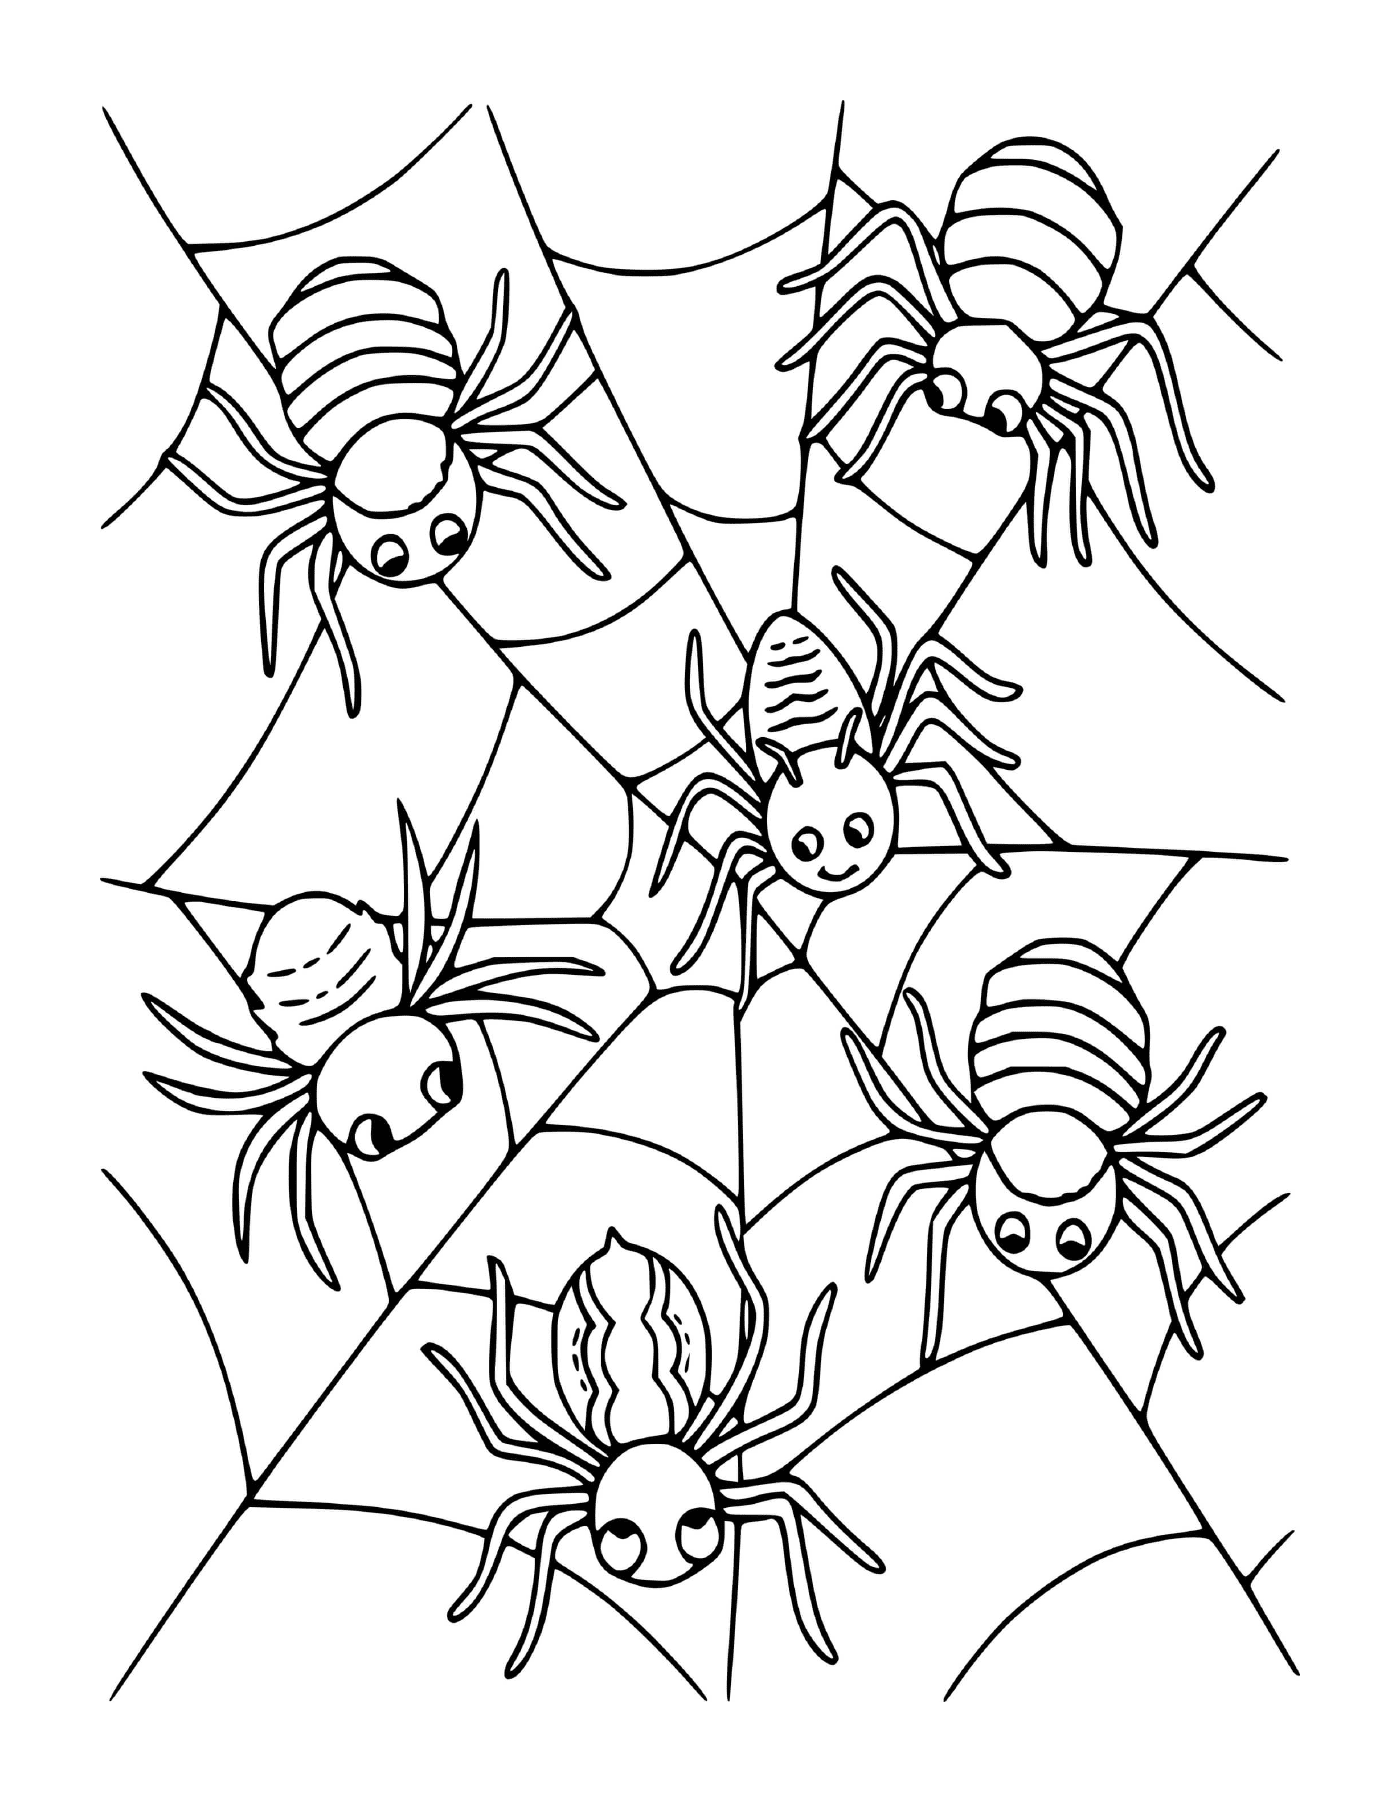  Un grupo de cuatro arañas sentadas en una telaraña 